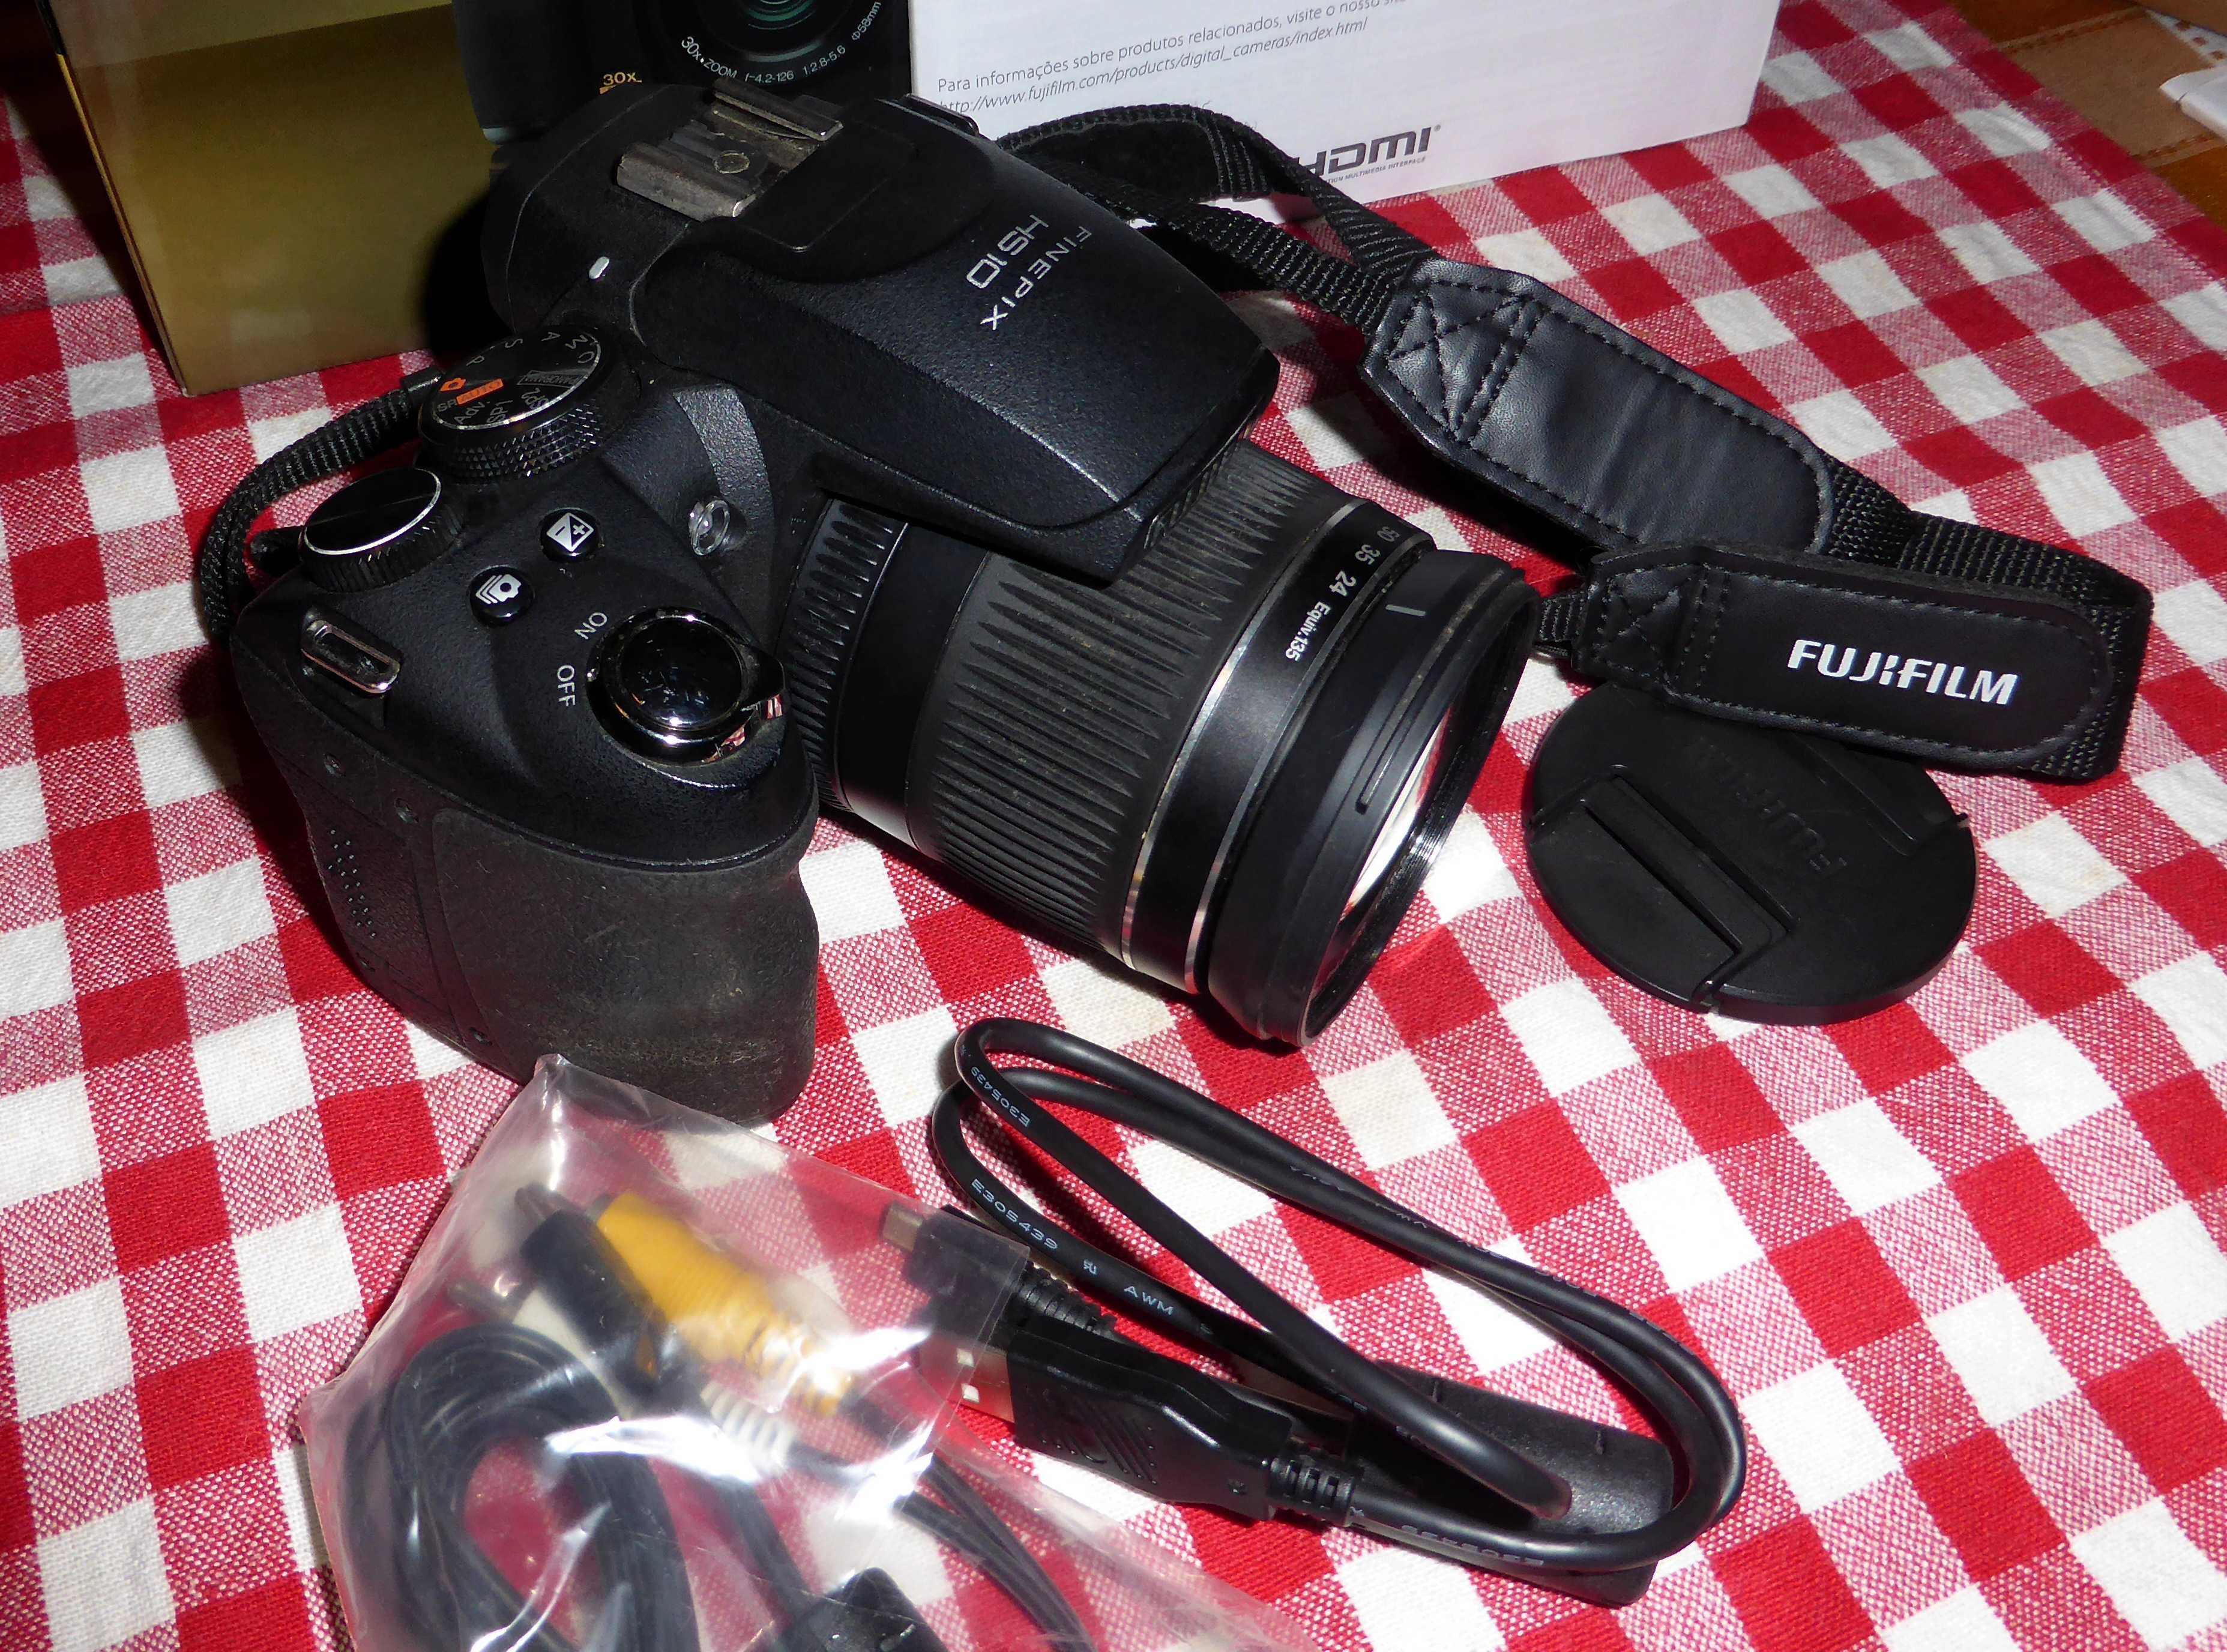 Câmara Fujifilm FinePix HS10 - Super Zoom Optico 30x (24-720mm)